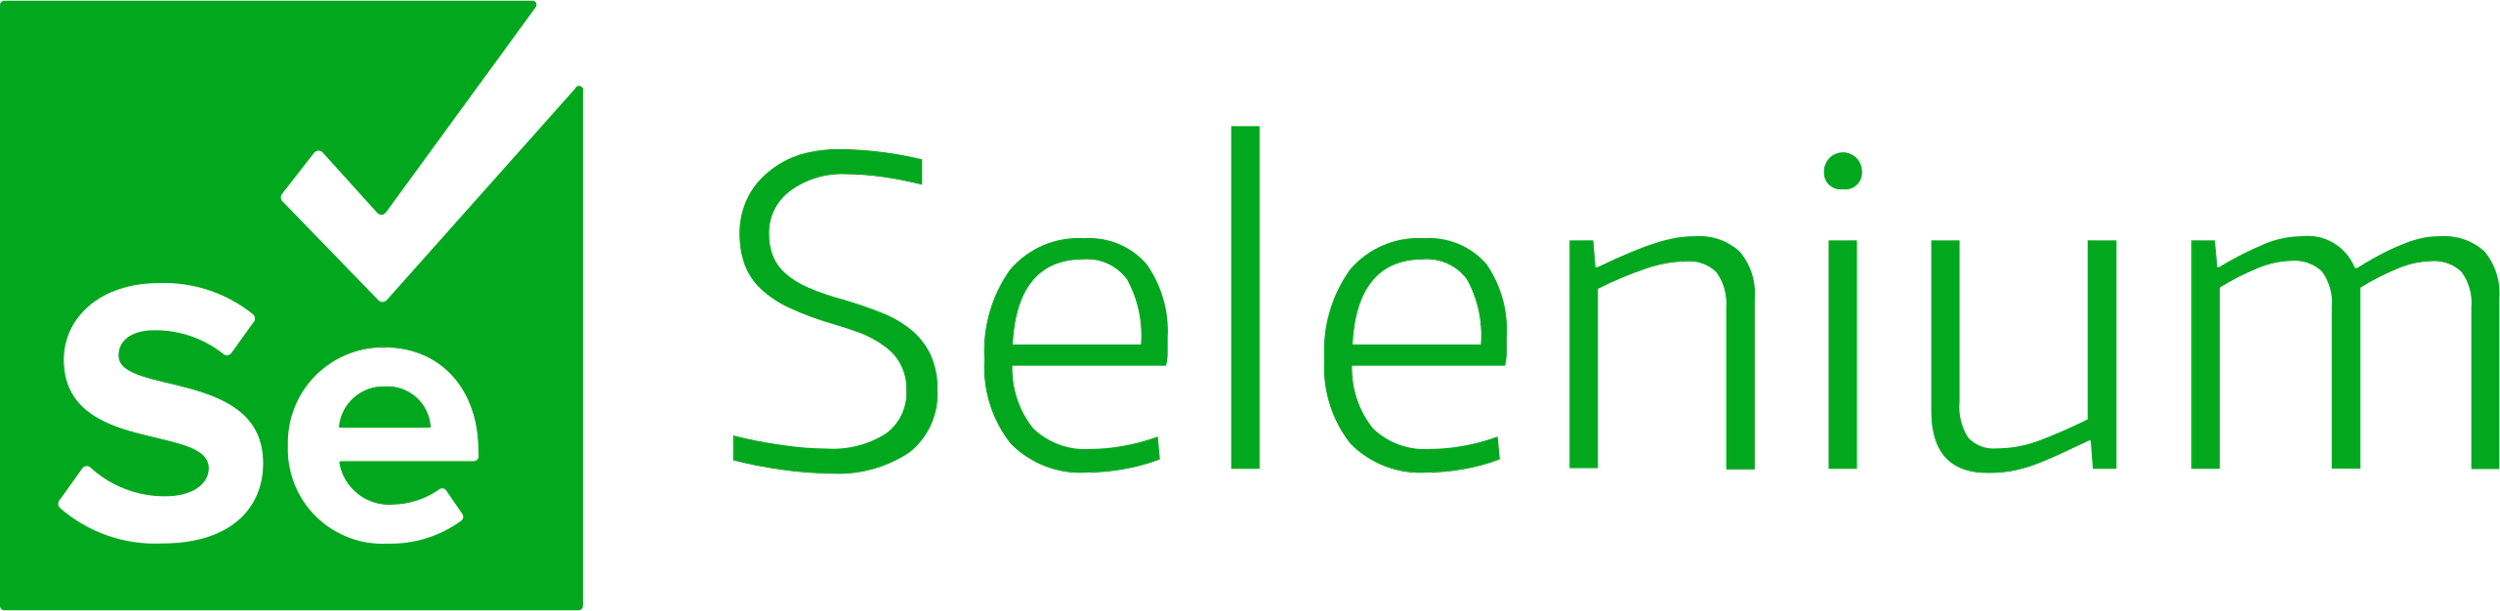 Selenium_logo.svg.png